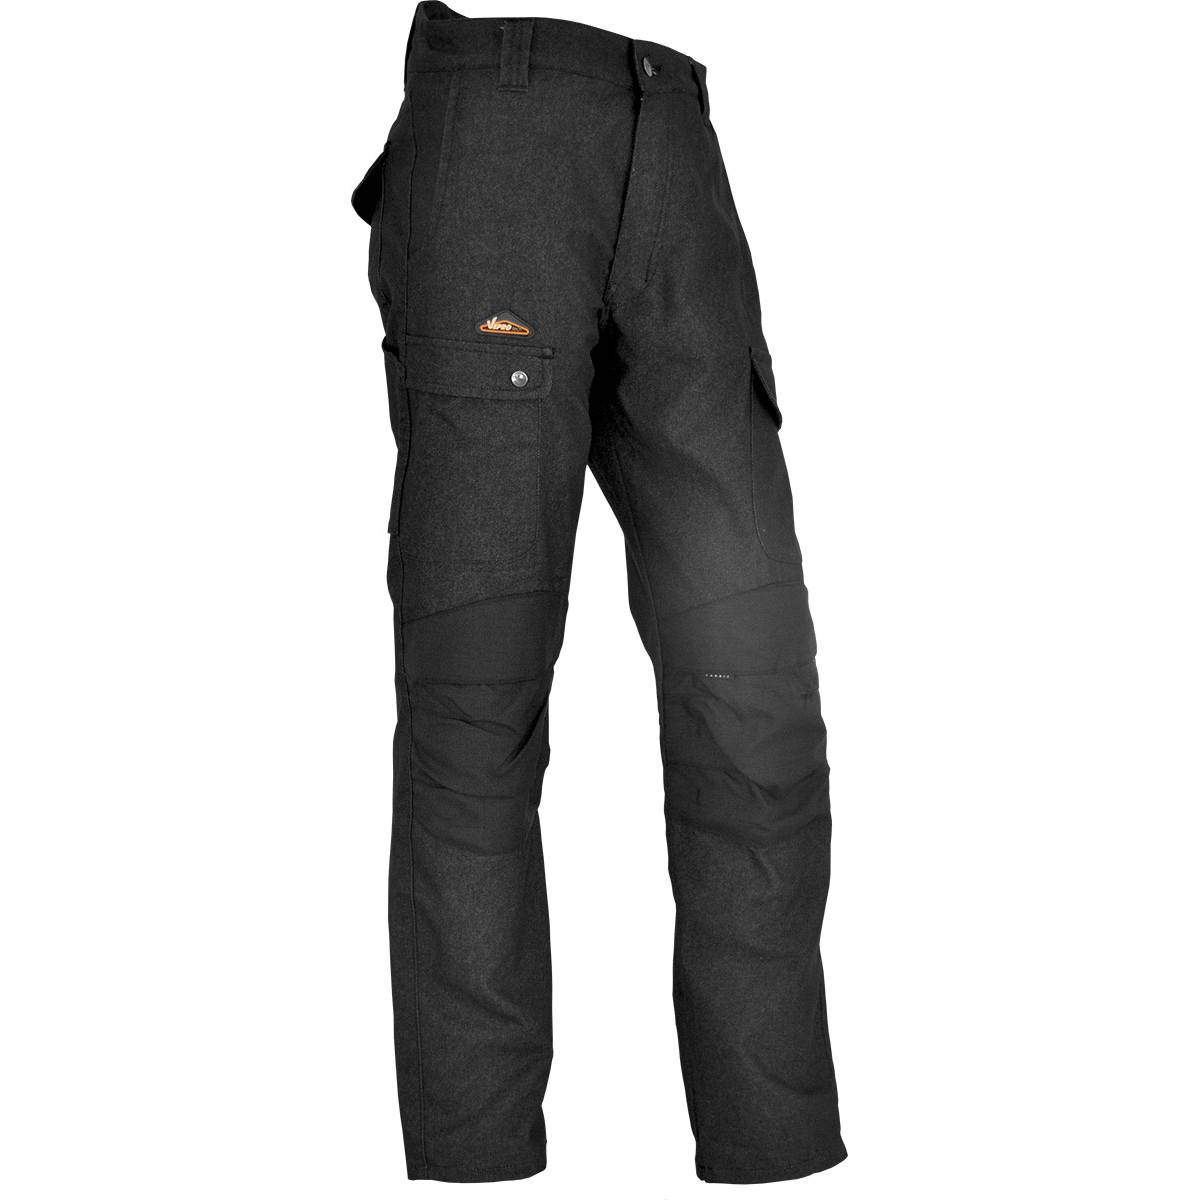 Pantalon de chantier ENDU Taille 48 Noir, poches multiples, genouillères incluses